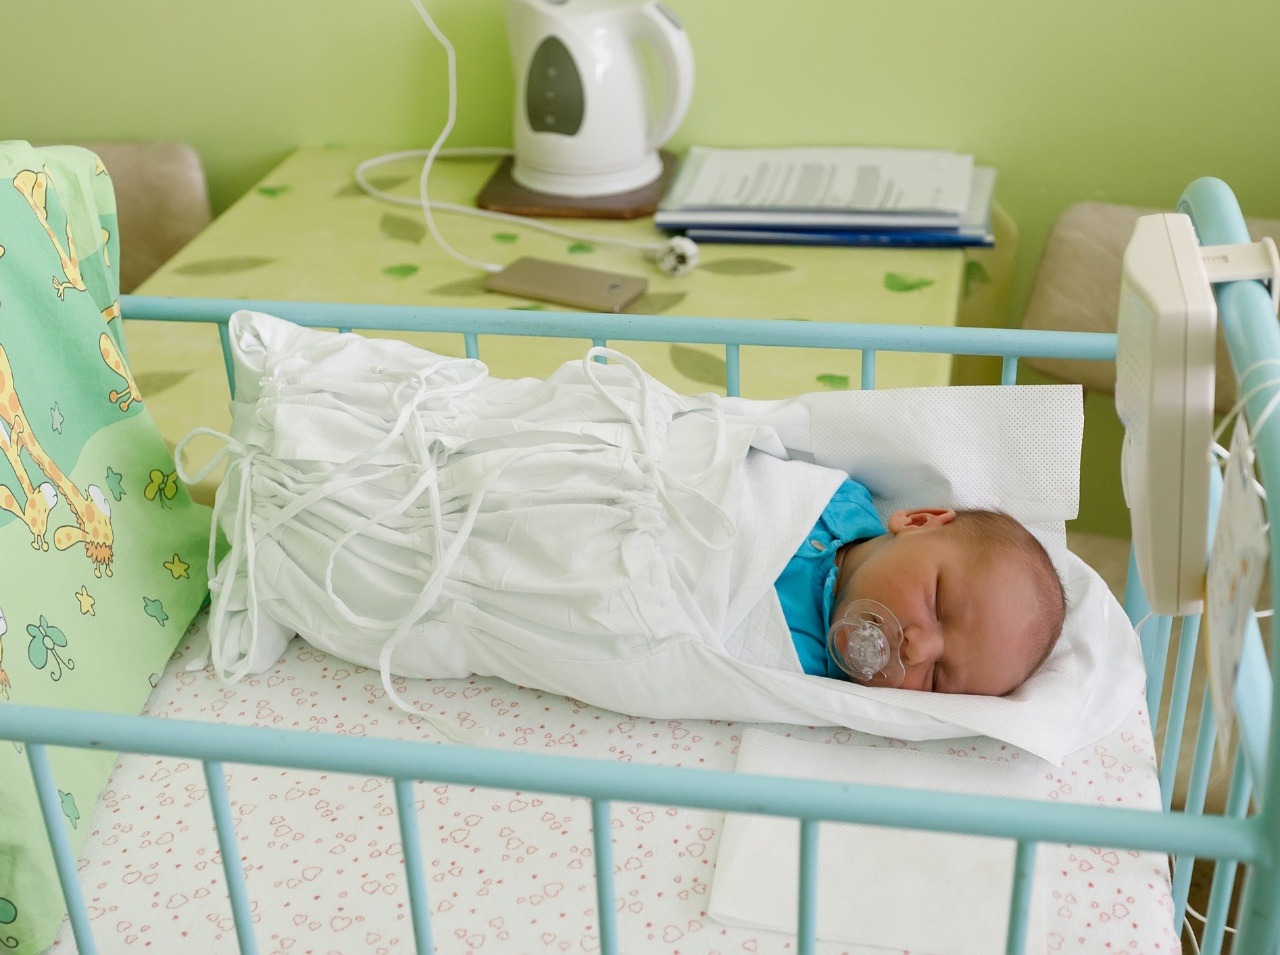 V ktorej nemocnici sú mamičky najviac spokojné? 